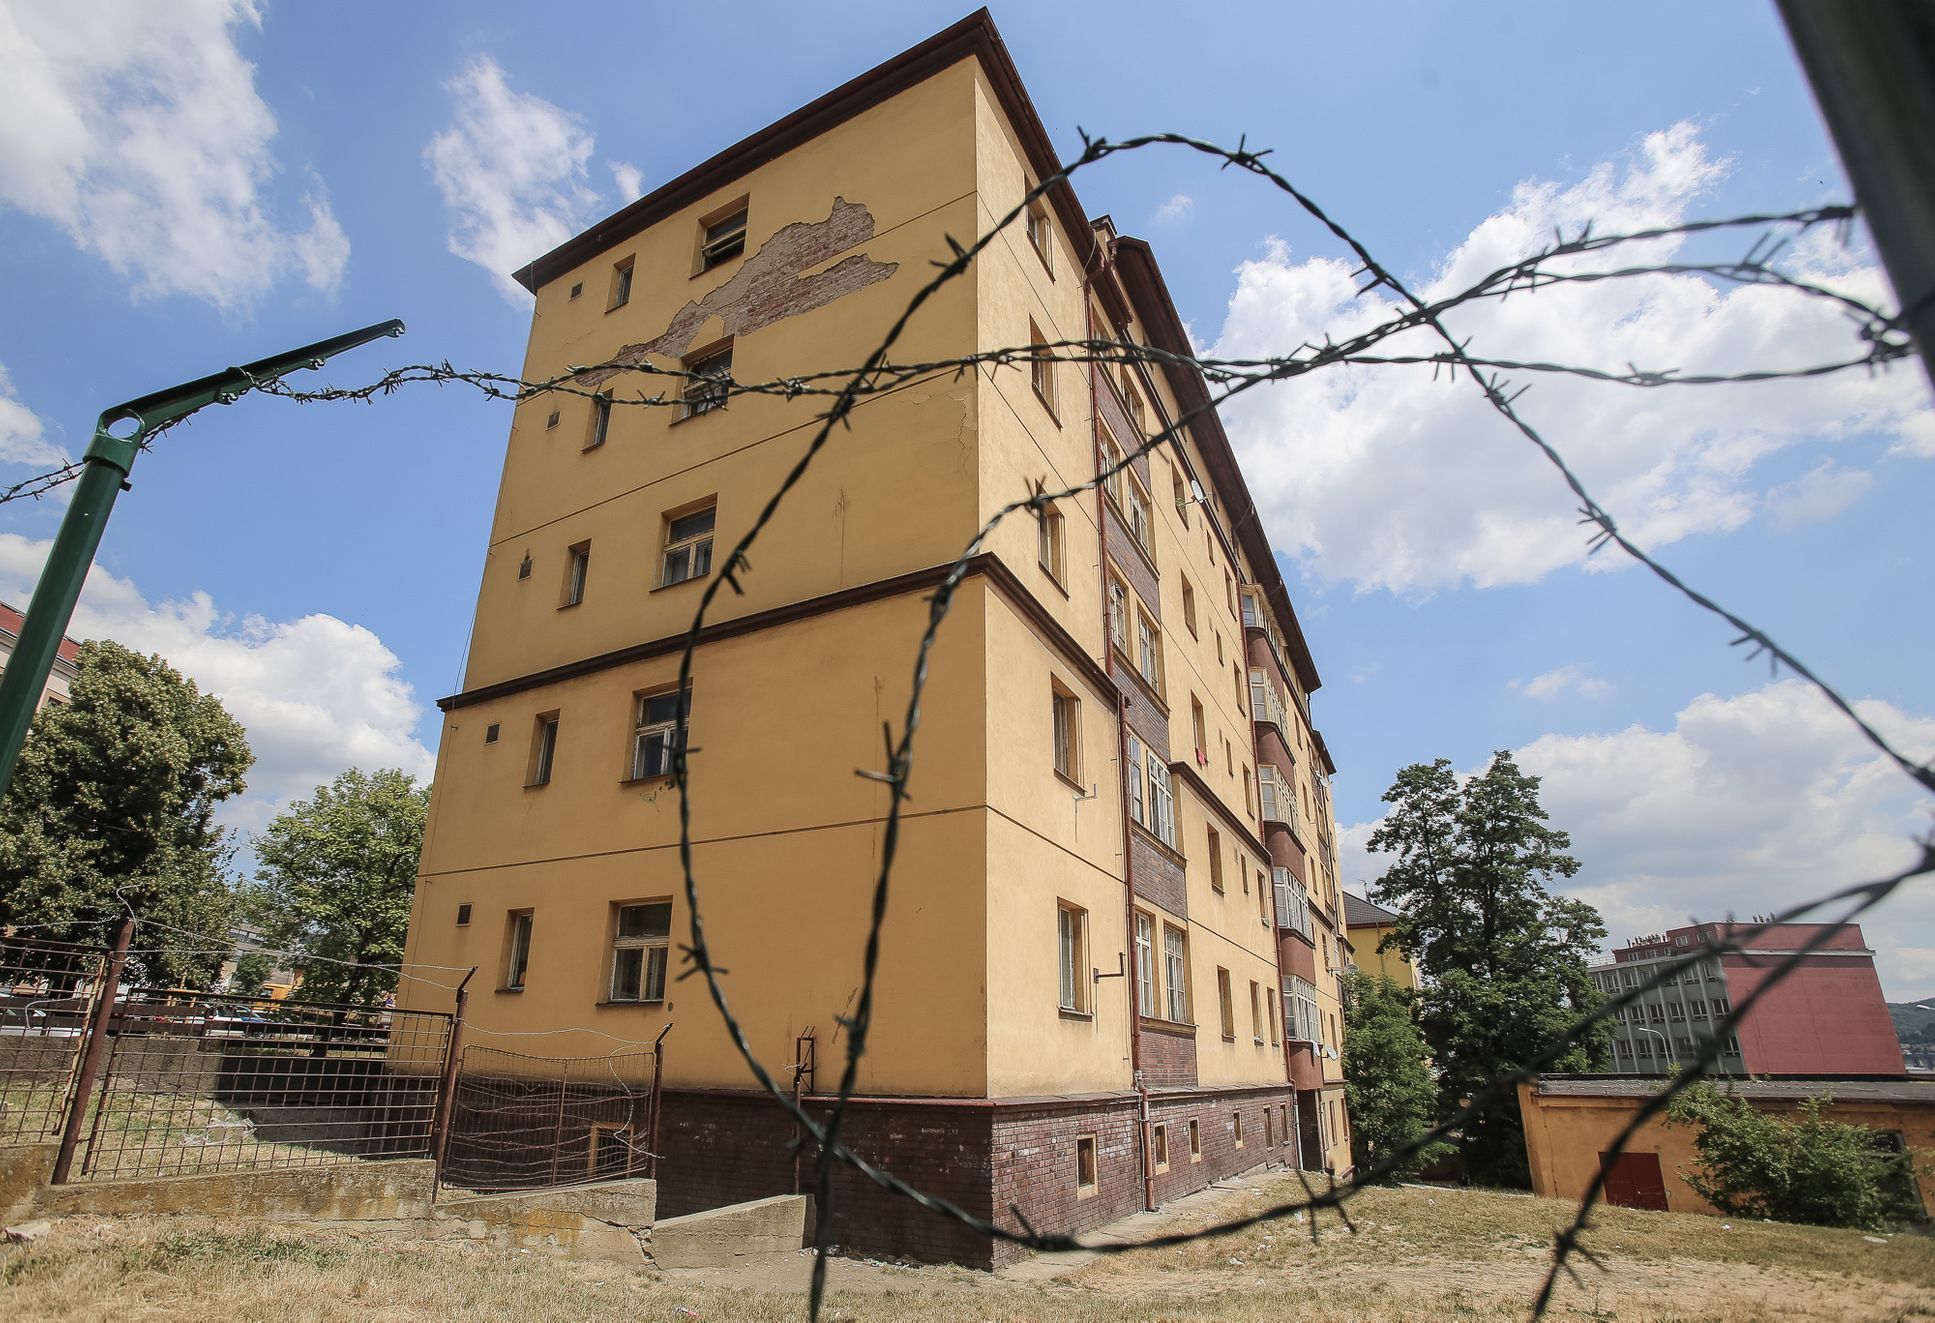 Dvě už brzy uzavřené ubytovny v Ústí nad Labem, jejich převážně romští obyvatelé a protest proti zavření